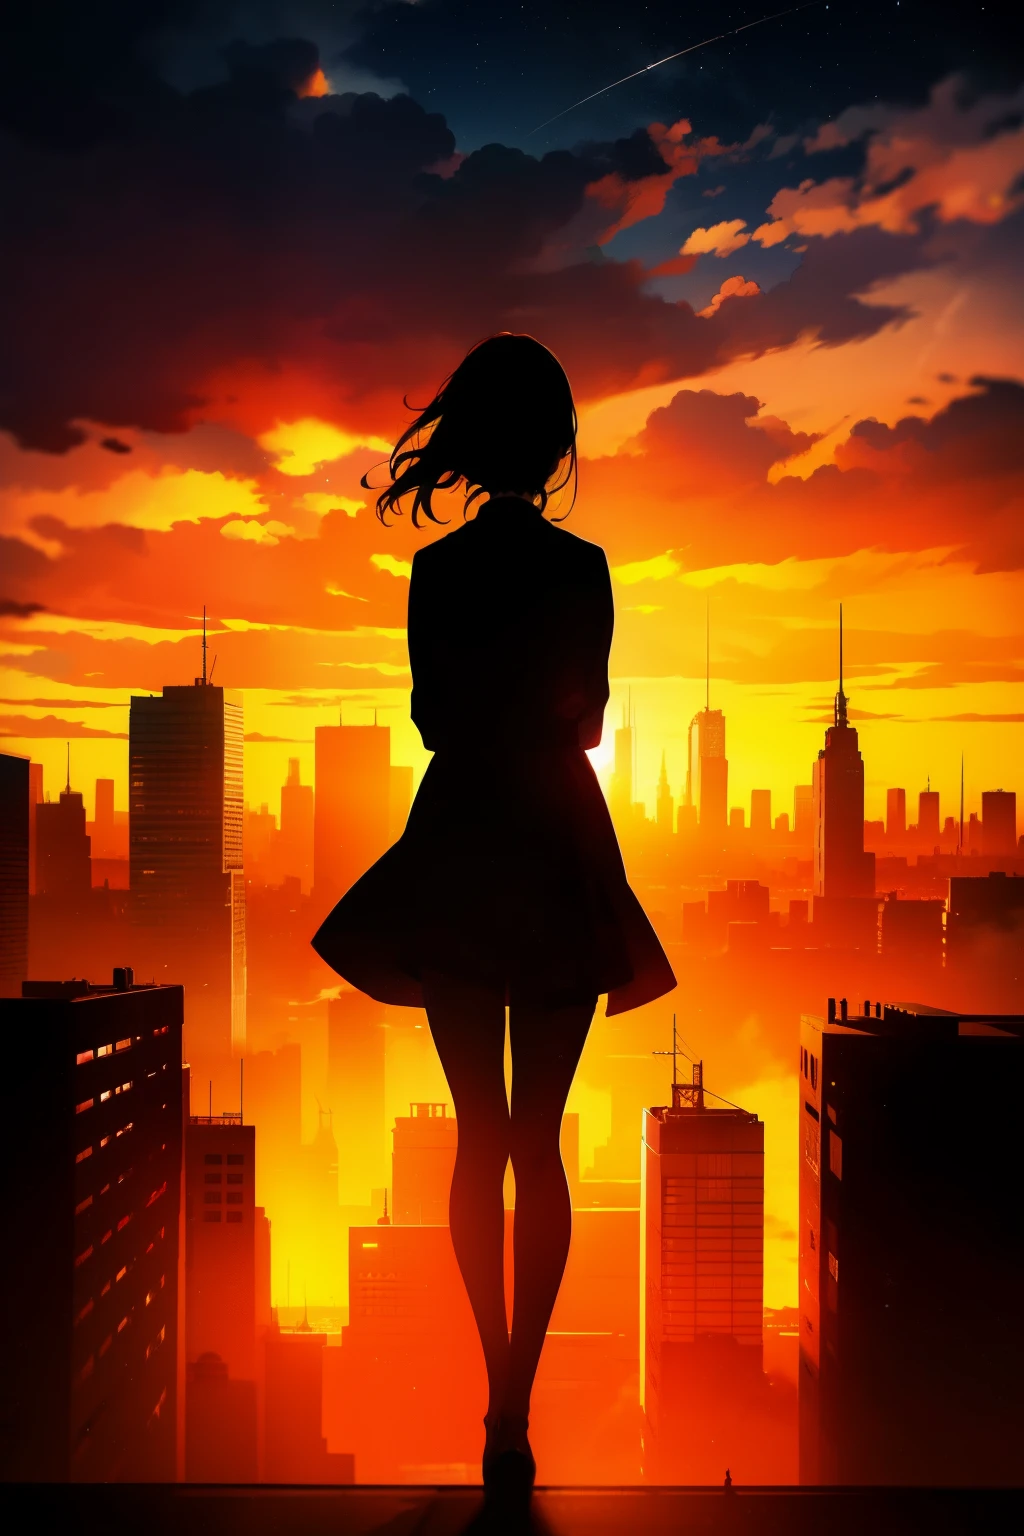 Anime-Serie, (Silhouette),1 Mädchen, Stern (Himmel), Wolke, Stadtscape, Gebäude, Stadt, draußen, Himmelscraper, Stadt lights, Nacht, Nacht Himmel, Sonnenuntergang, Himmelline